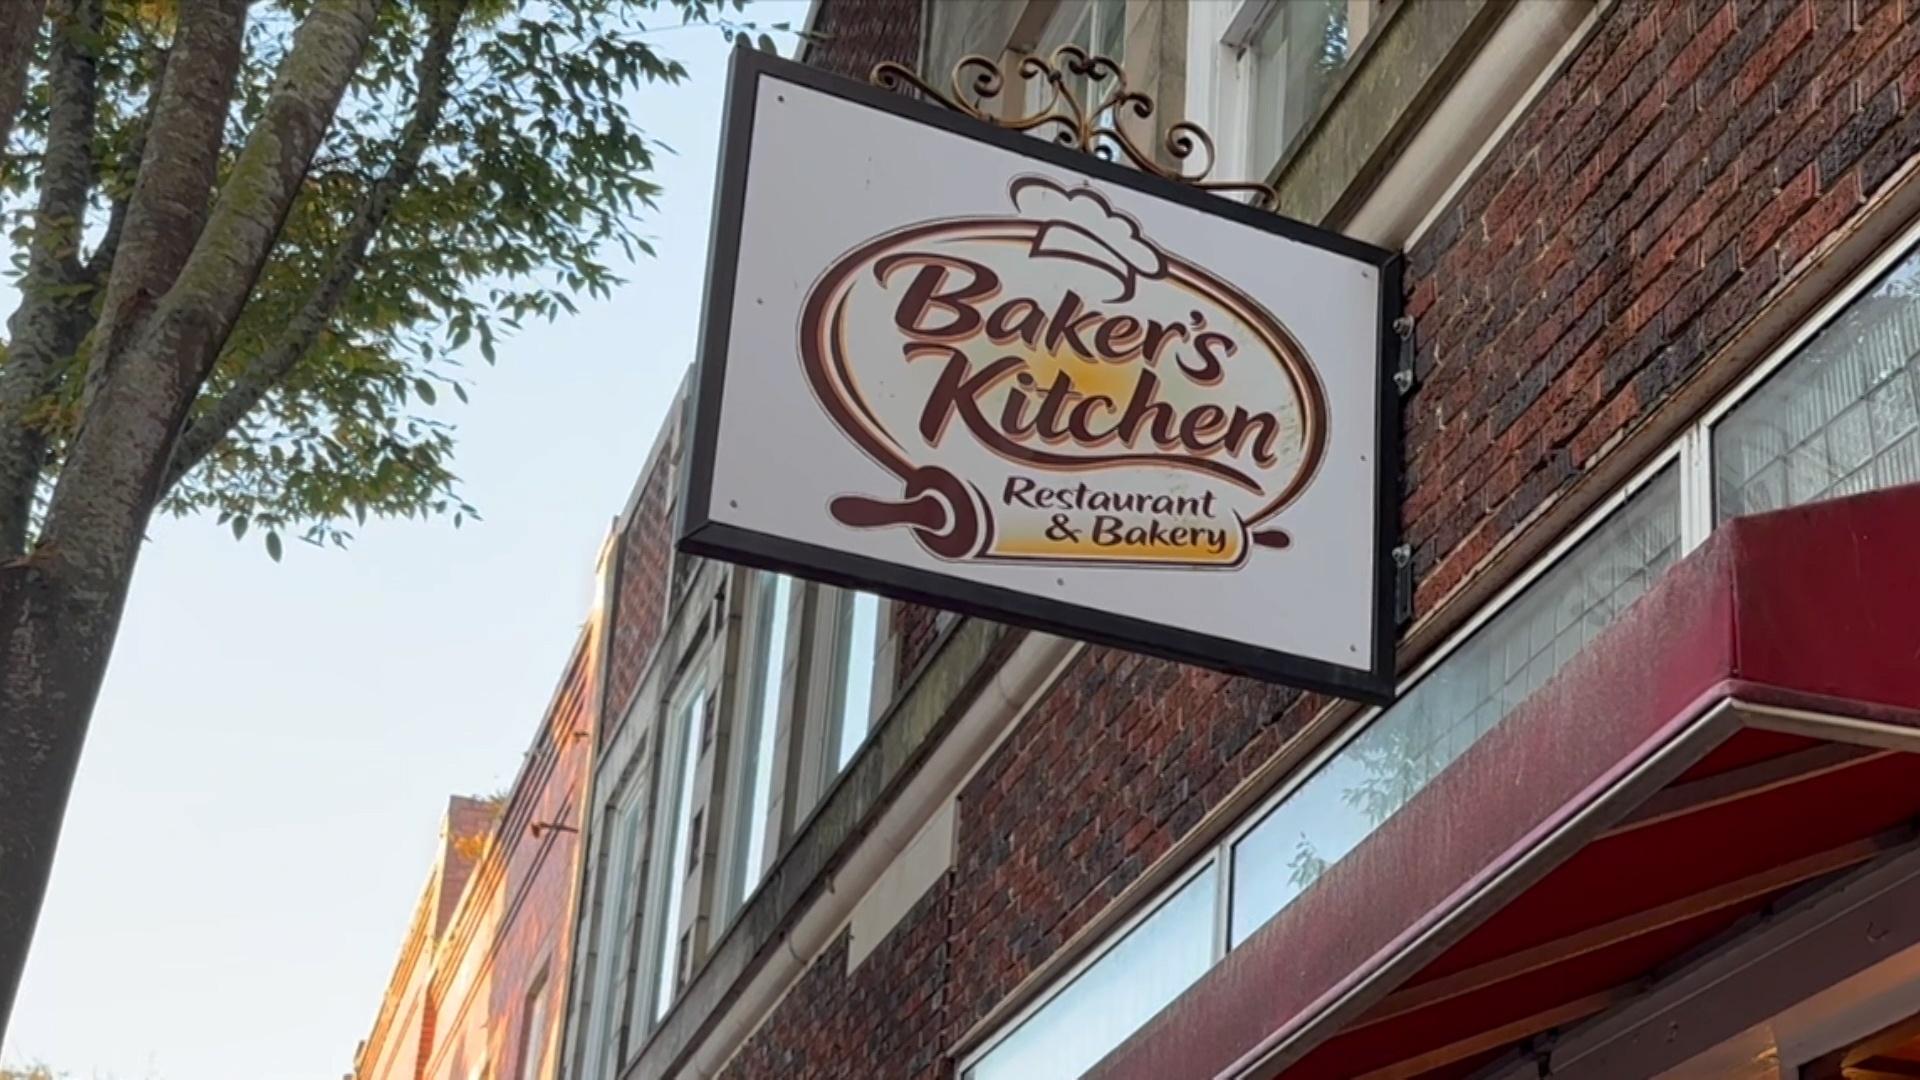 Baker's Kitchen Restaurant and Bakery